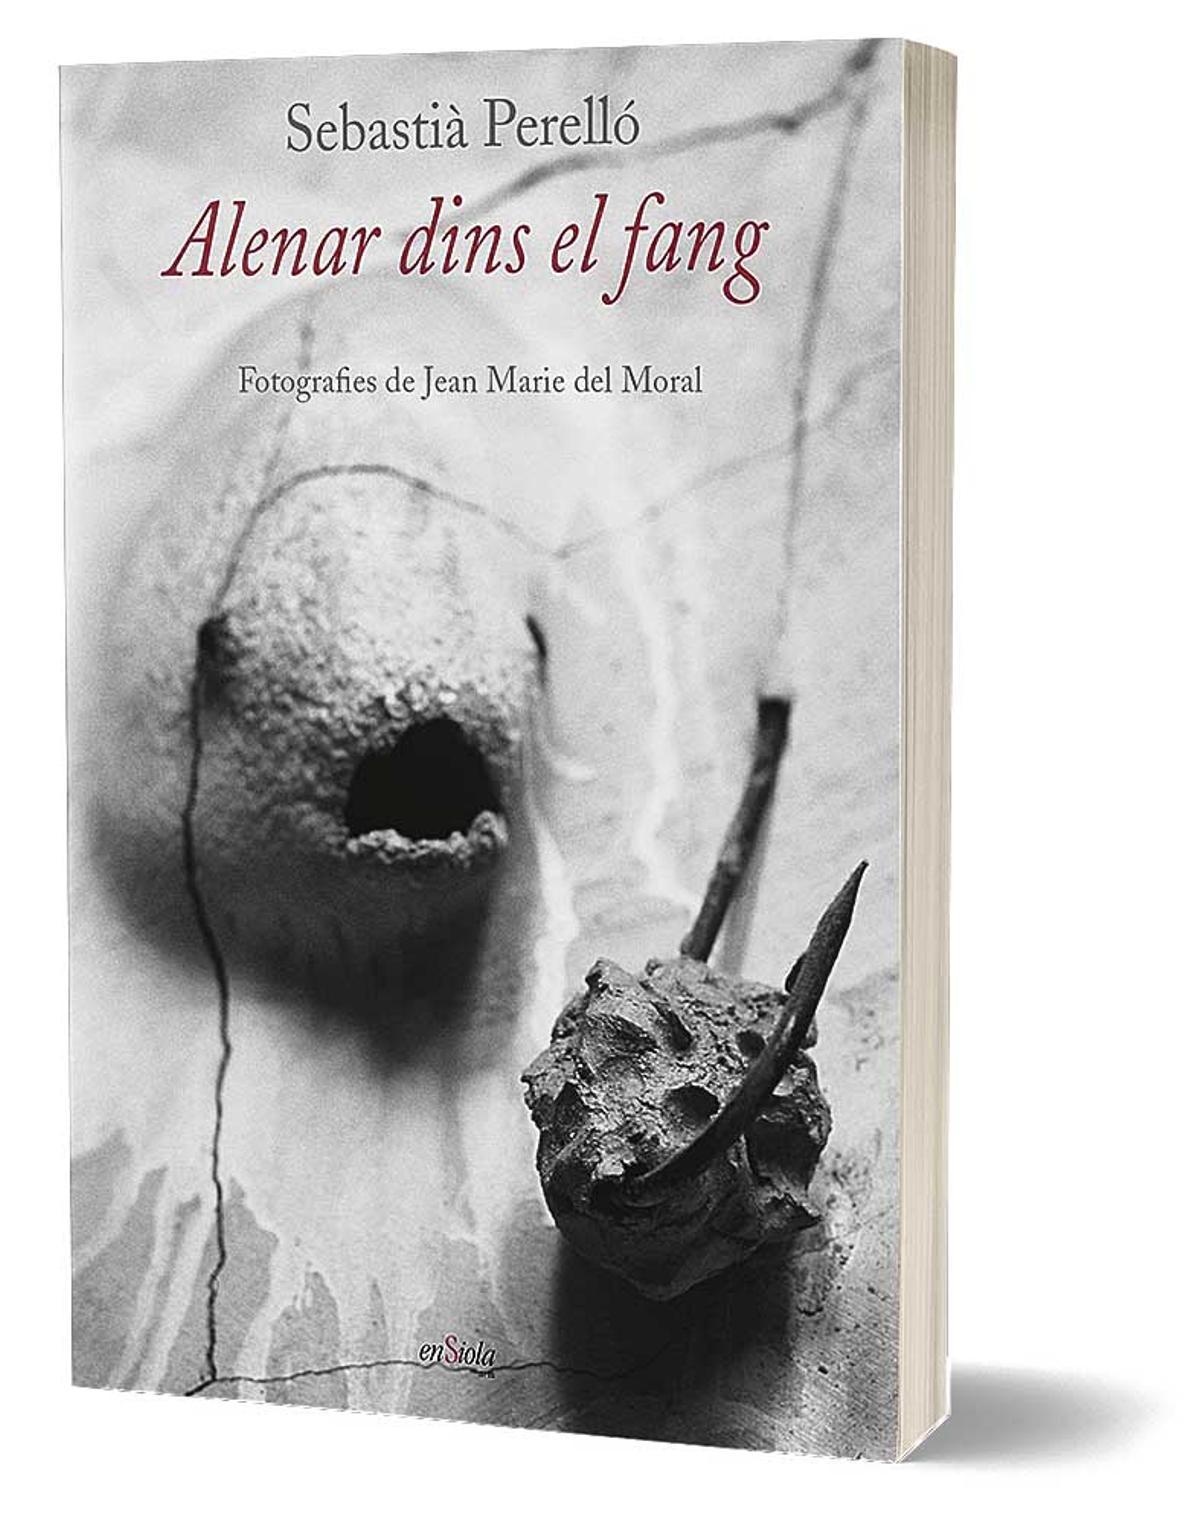 Portada del  llibre, Alenar dins el fang, de Sebastià Perelló i fotografies de Jean Marie del Moral